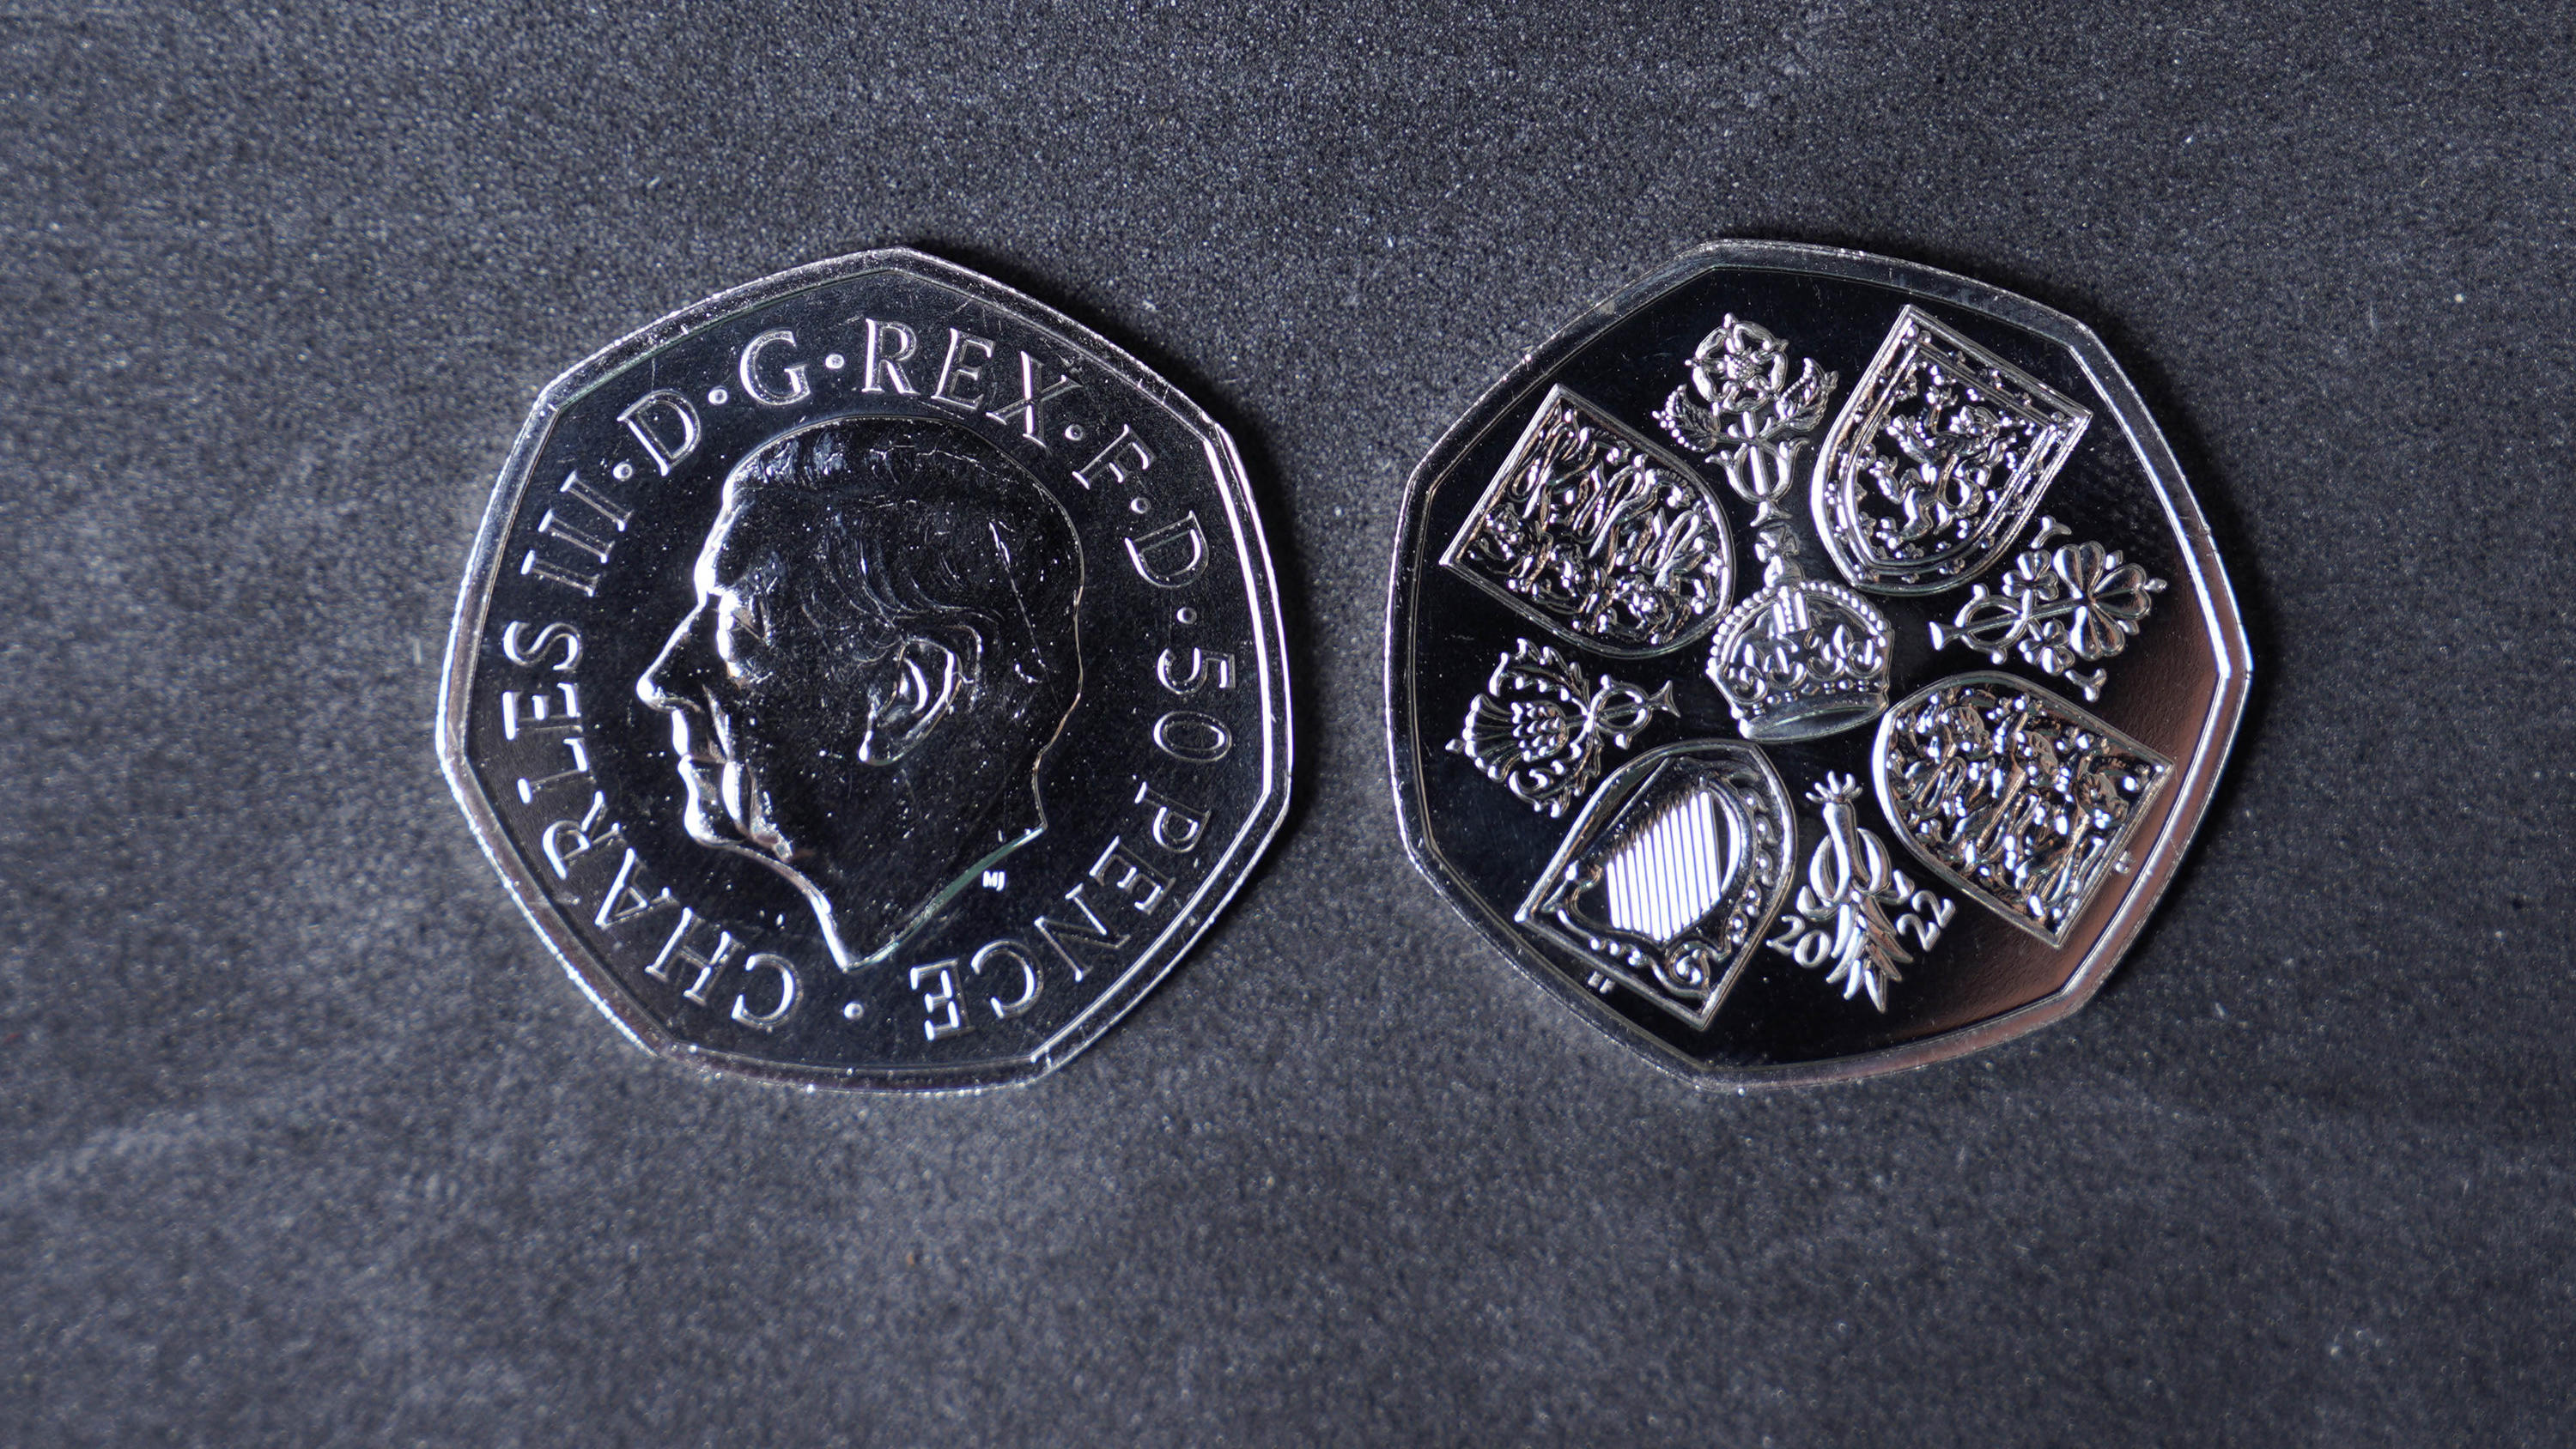 28.10.2022, Großbritannien, Pontyclun: Eine Geldmünze mit dem Konterfei des britischen König Charles III. (l) liegt neben einer Geldmünze, auf der die Rückseite abgebildet ist. Die ersten britischen Geldmünzen mit dem Konterfei des neuen Königs Charl